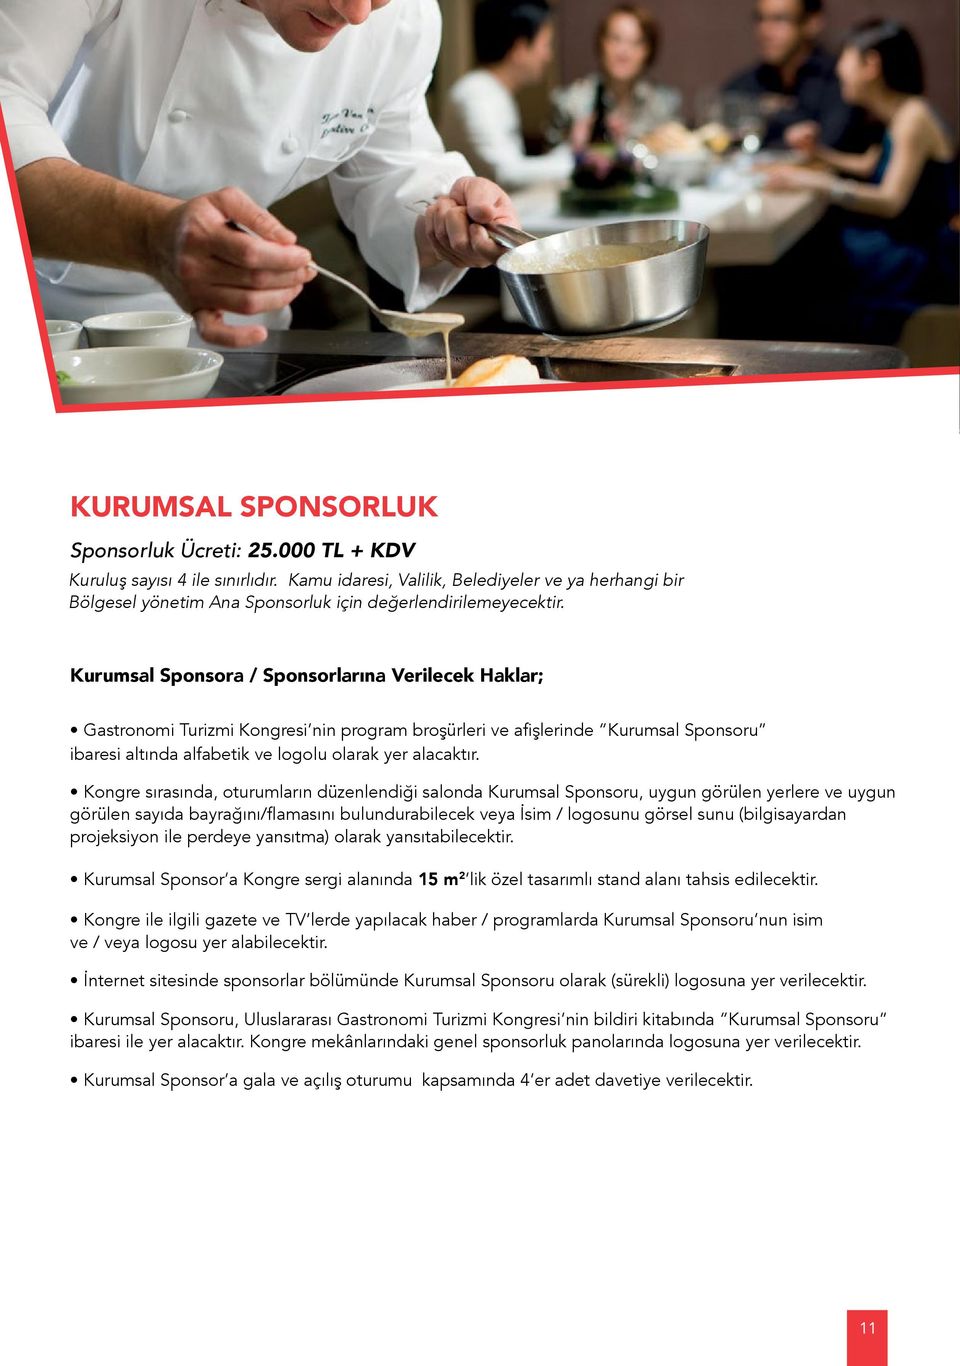 Kurumsal Sponsora / Sponsorlarına Verilecek Haklar; Gastronomi Turizmi Kongresi nin program broşürleri ve afişlerinde Kurumsal Sponsoru ibaresi altında alfabetik ve logolu olarak yer alacaktır.